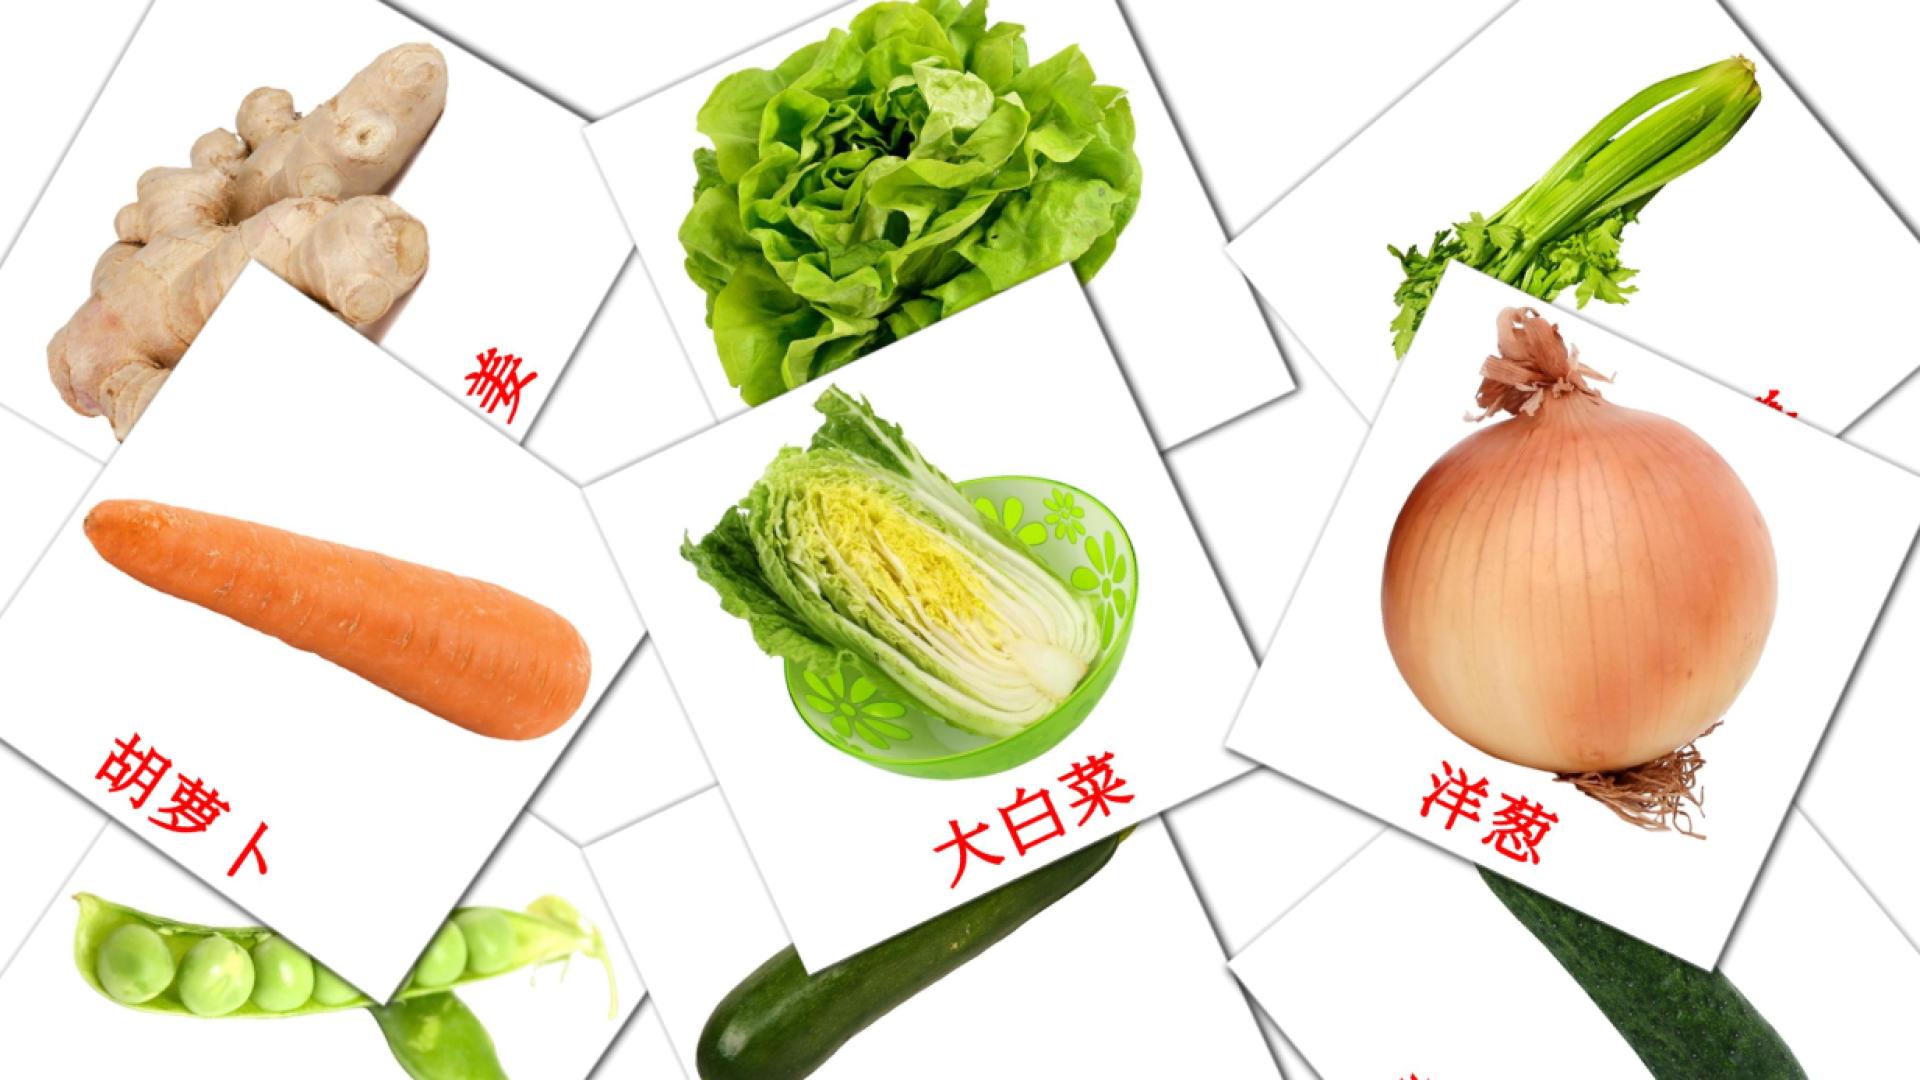 29 蔬菜 flashcards